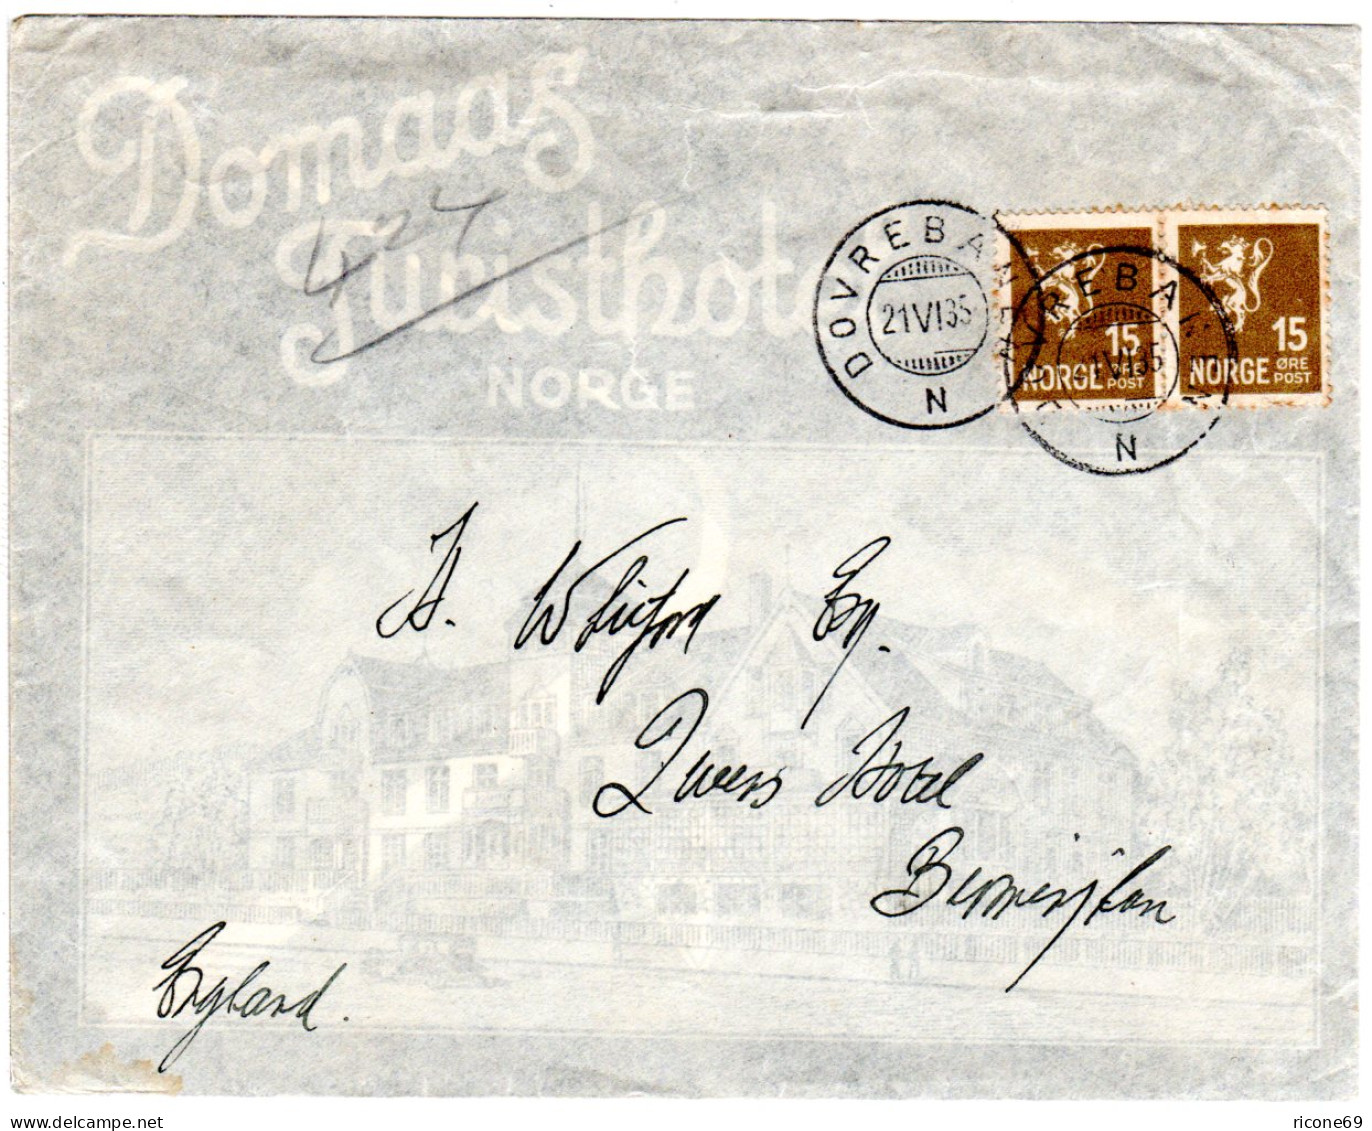 Norwegen 1935, 2x15 öre Auf Illustriertem Domaas Hotel Reklame Umschlag. - Briefe U. Dokumente